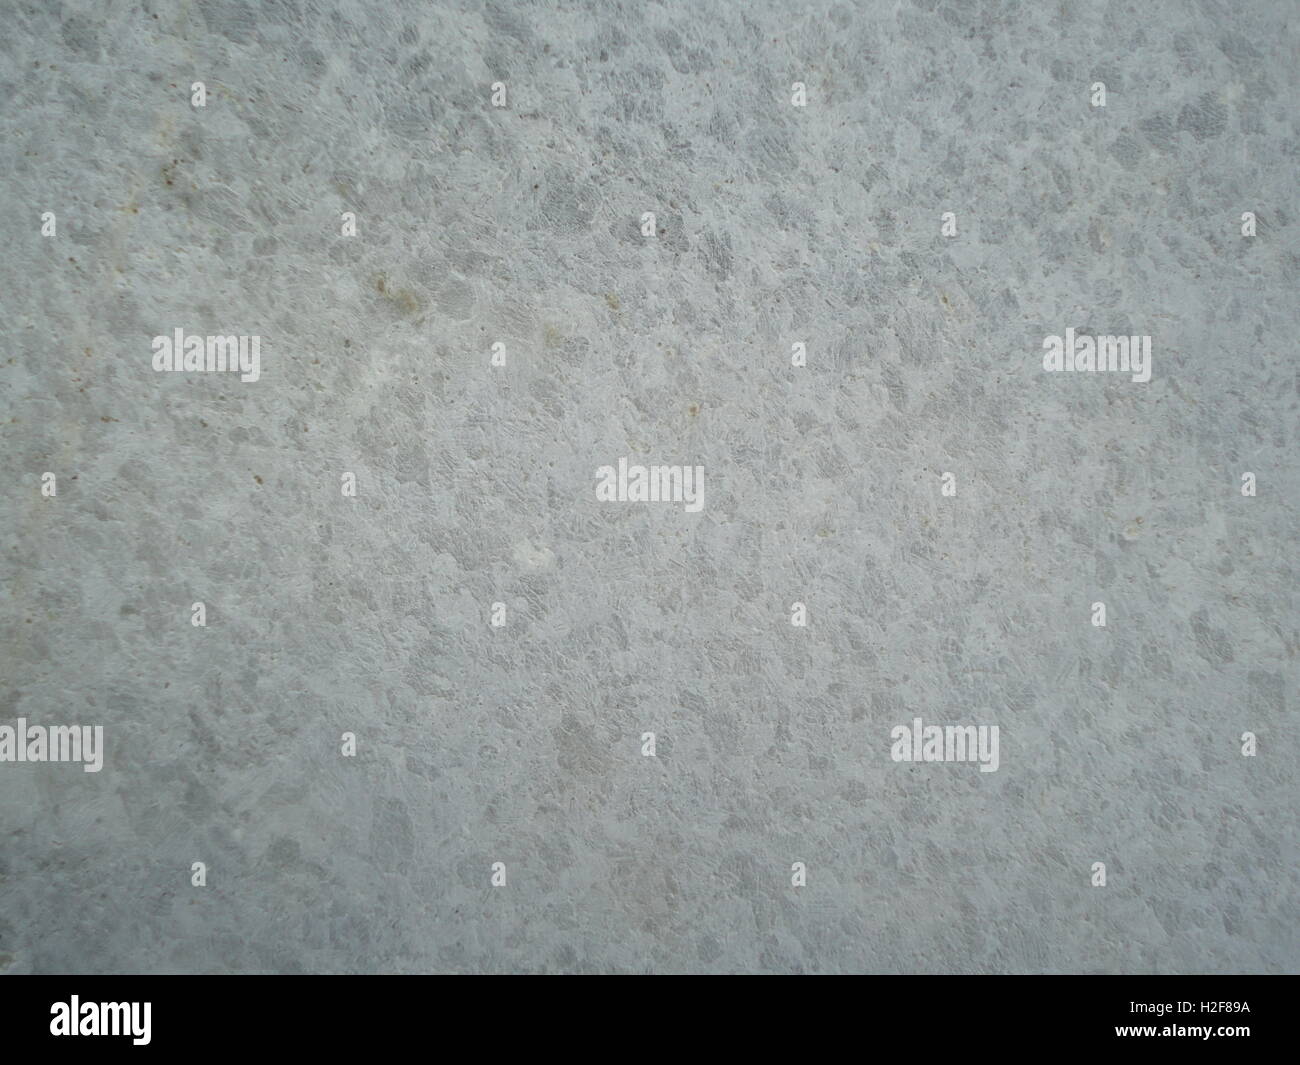 Detalle de una foto de una pared de piedra y cemento, textura, trama, colores claros, monócromo Foto de stock